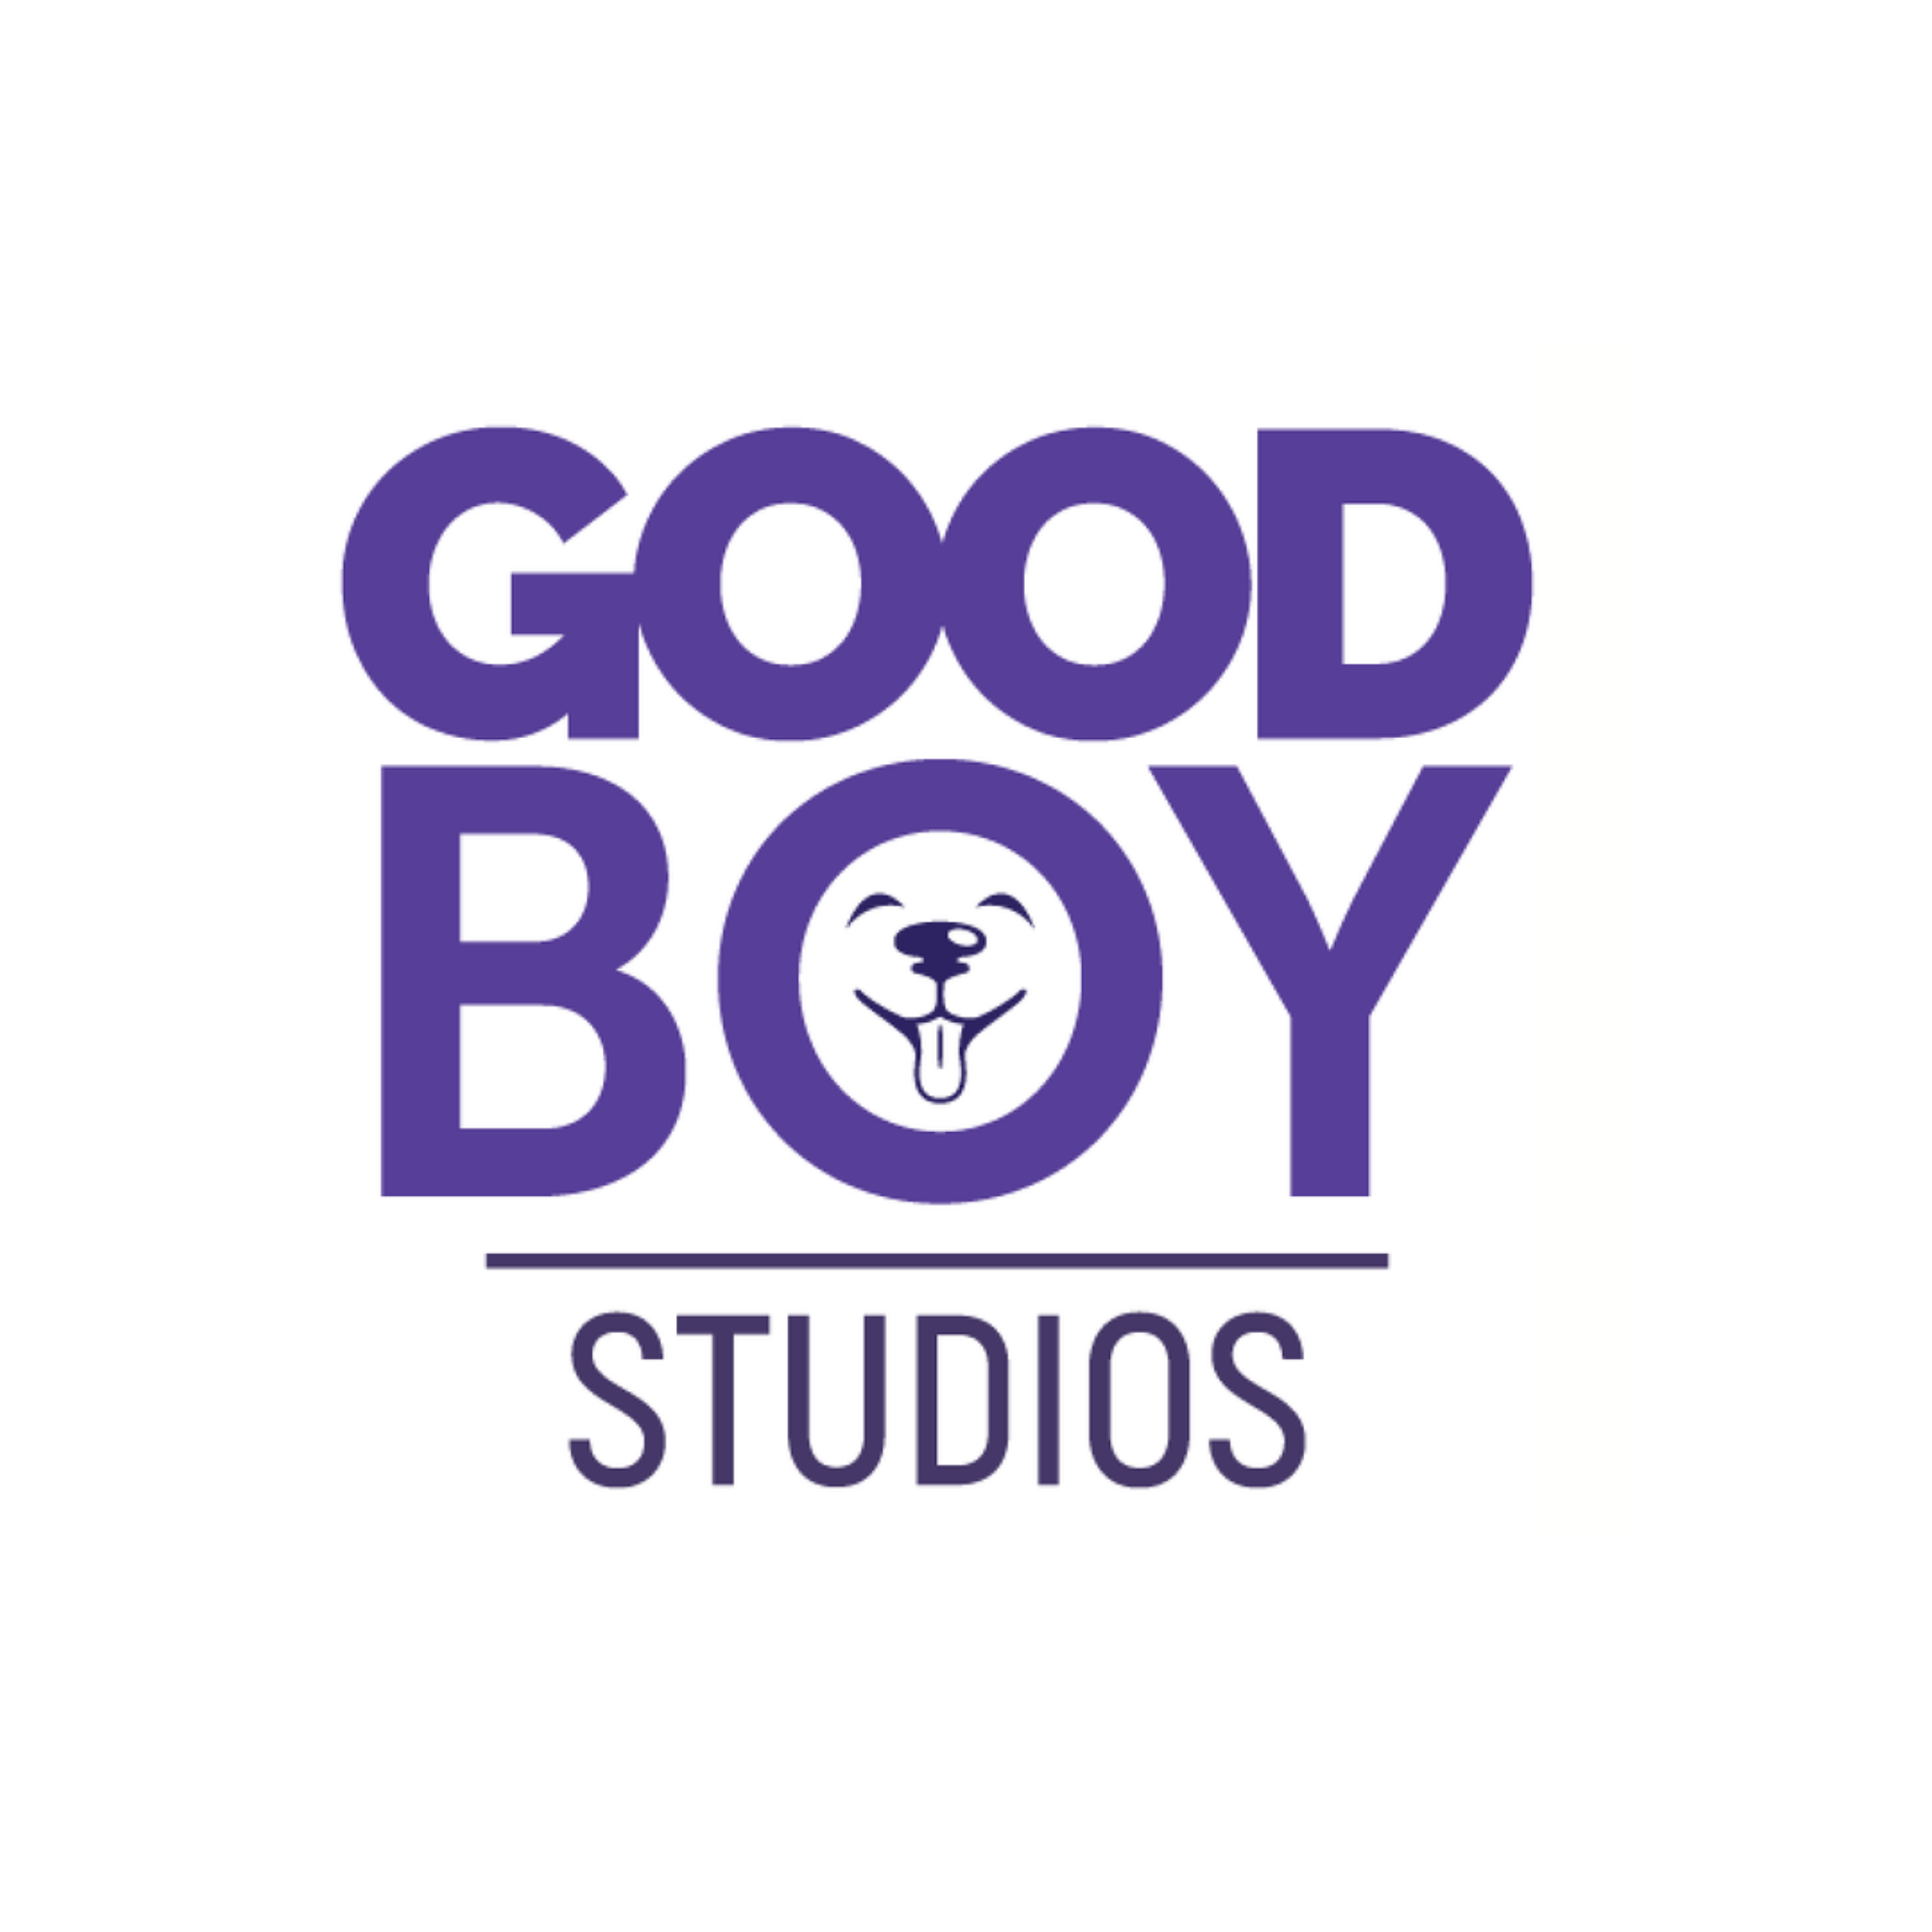 Good Boy Studios